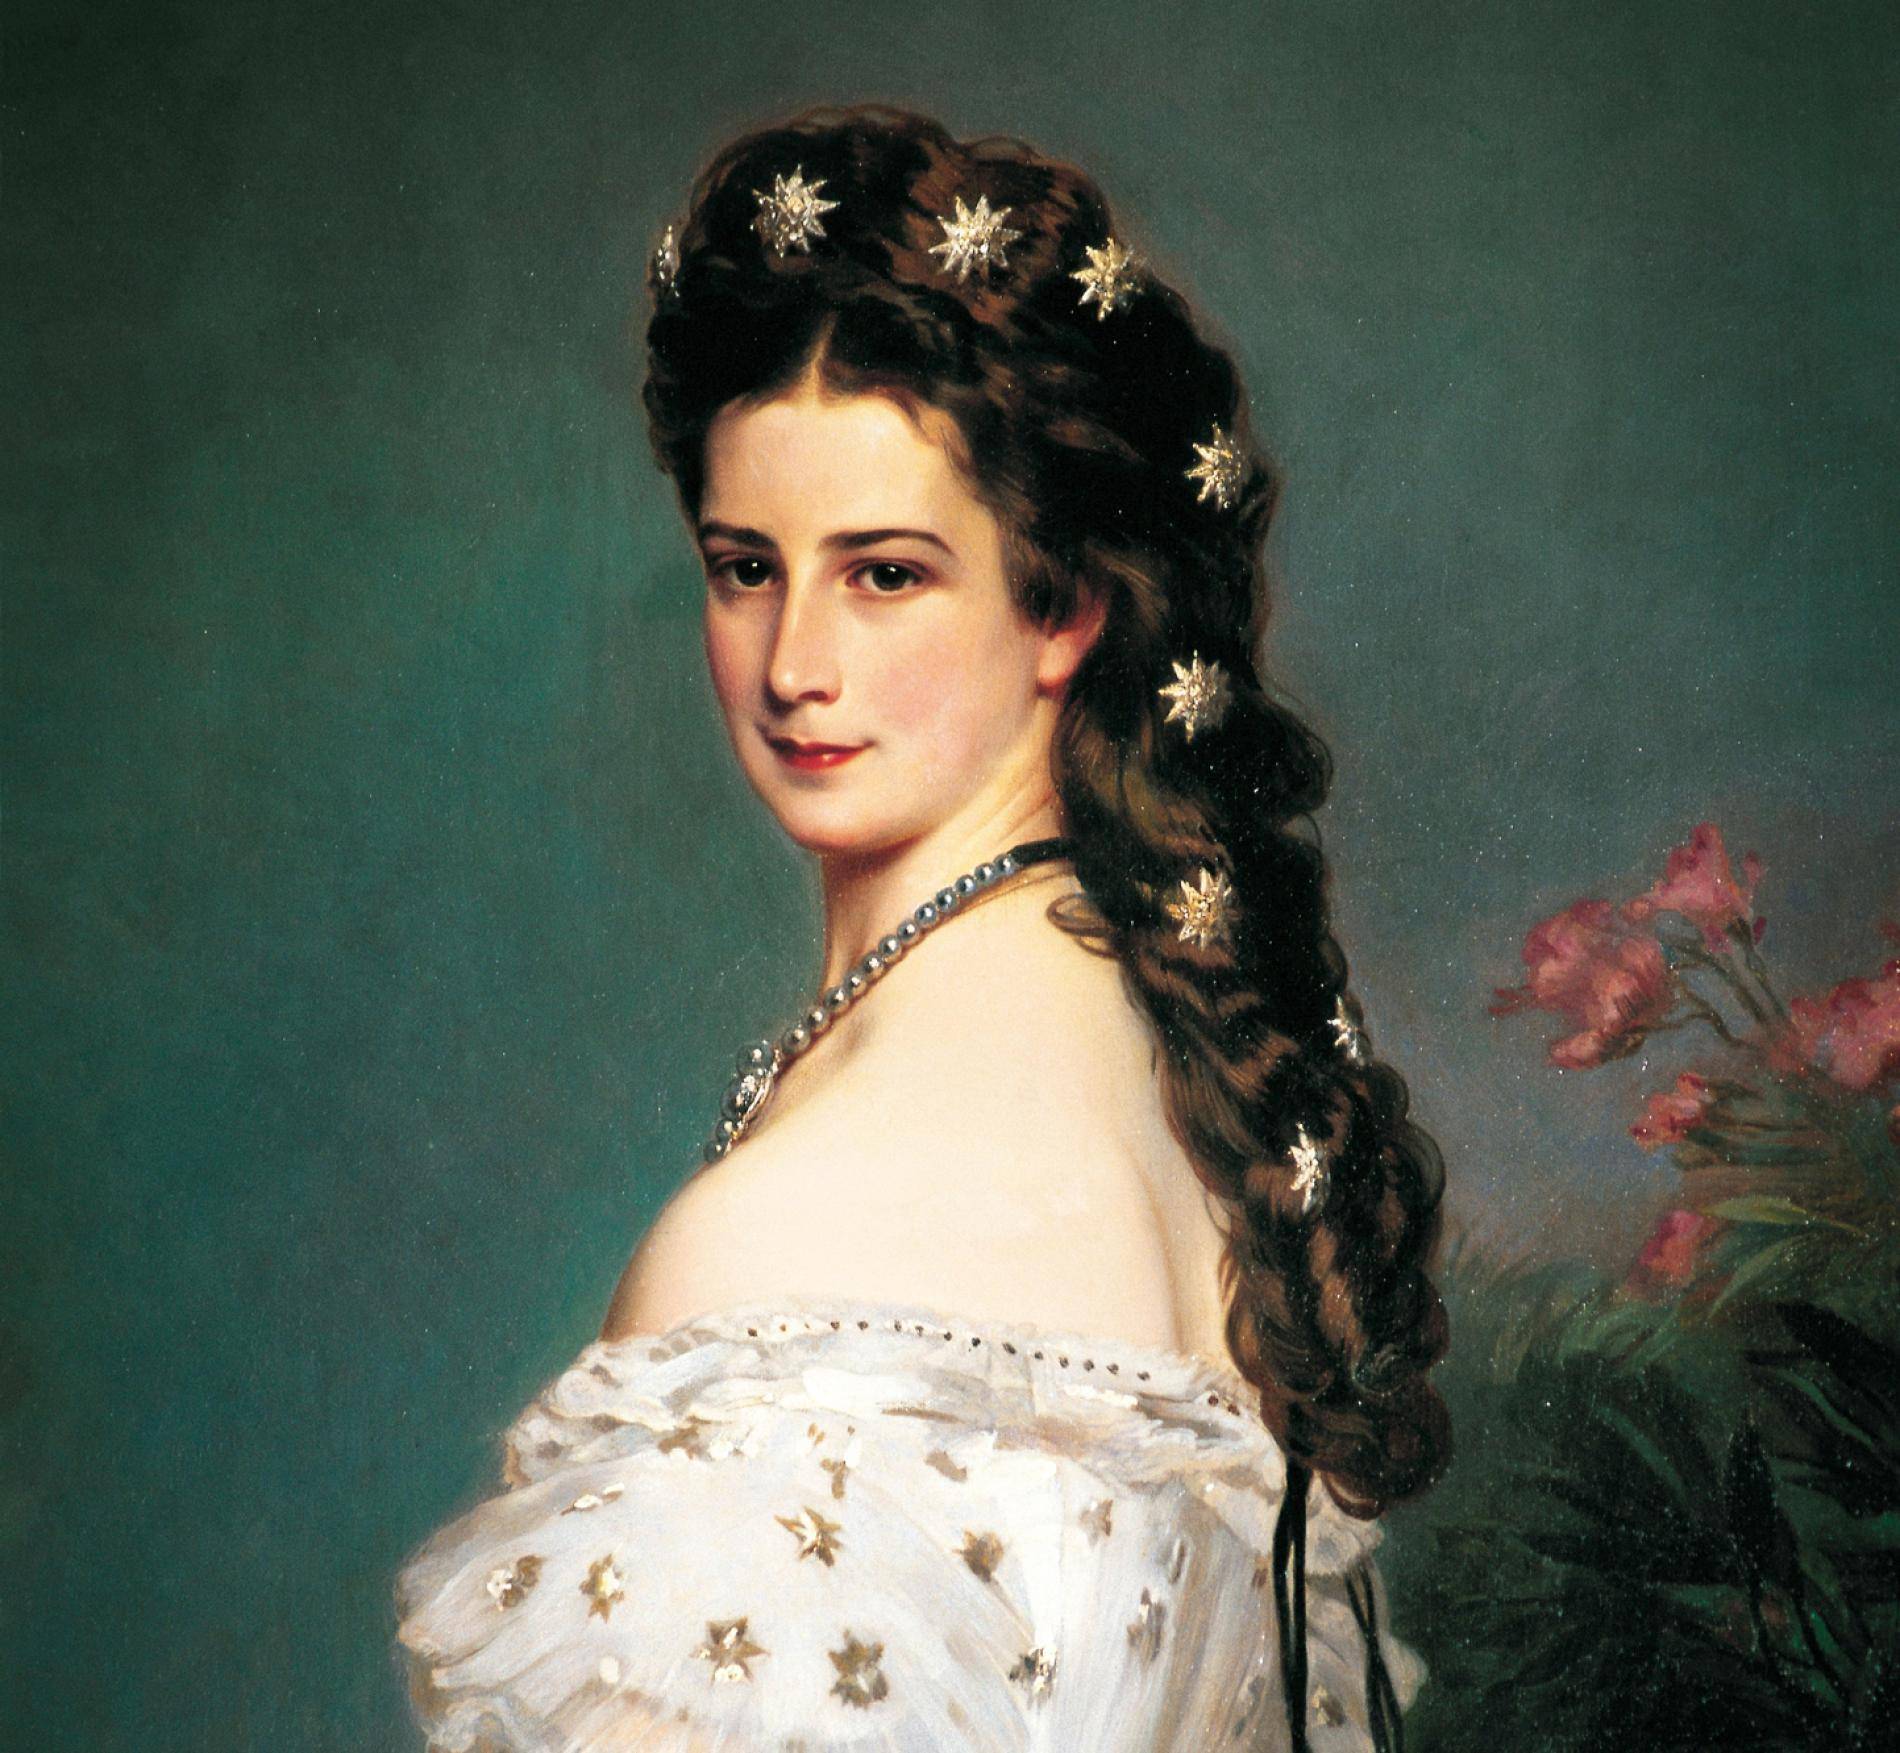 Împărăteasa Sissi, una dintre cele mai frumoase capete încoronate ale Austriei. Viața și sfârșitul său tragic